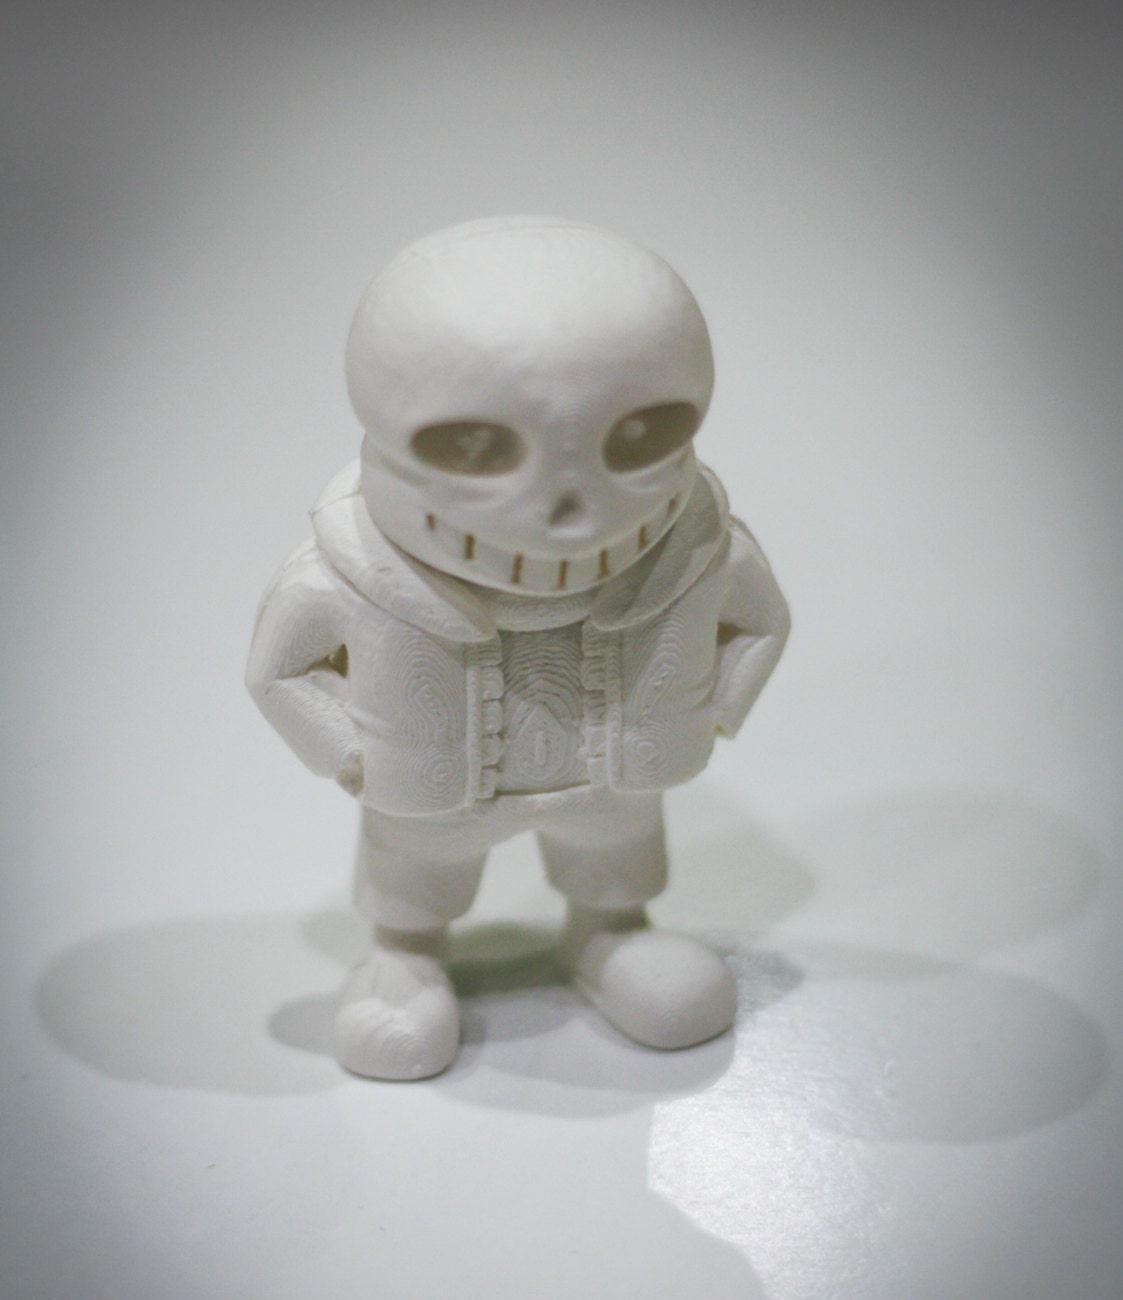 Sans Undertale Character 3D model 3D printable